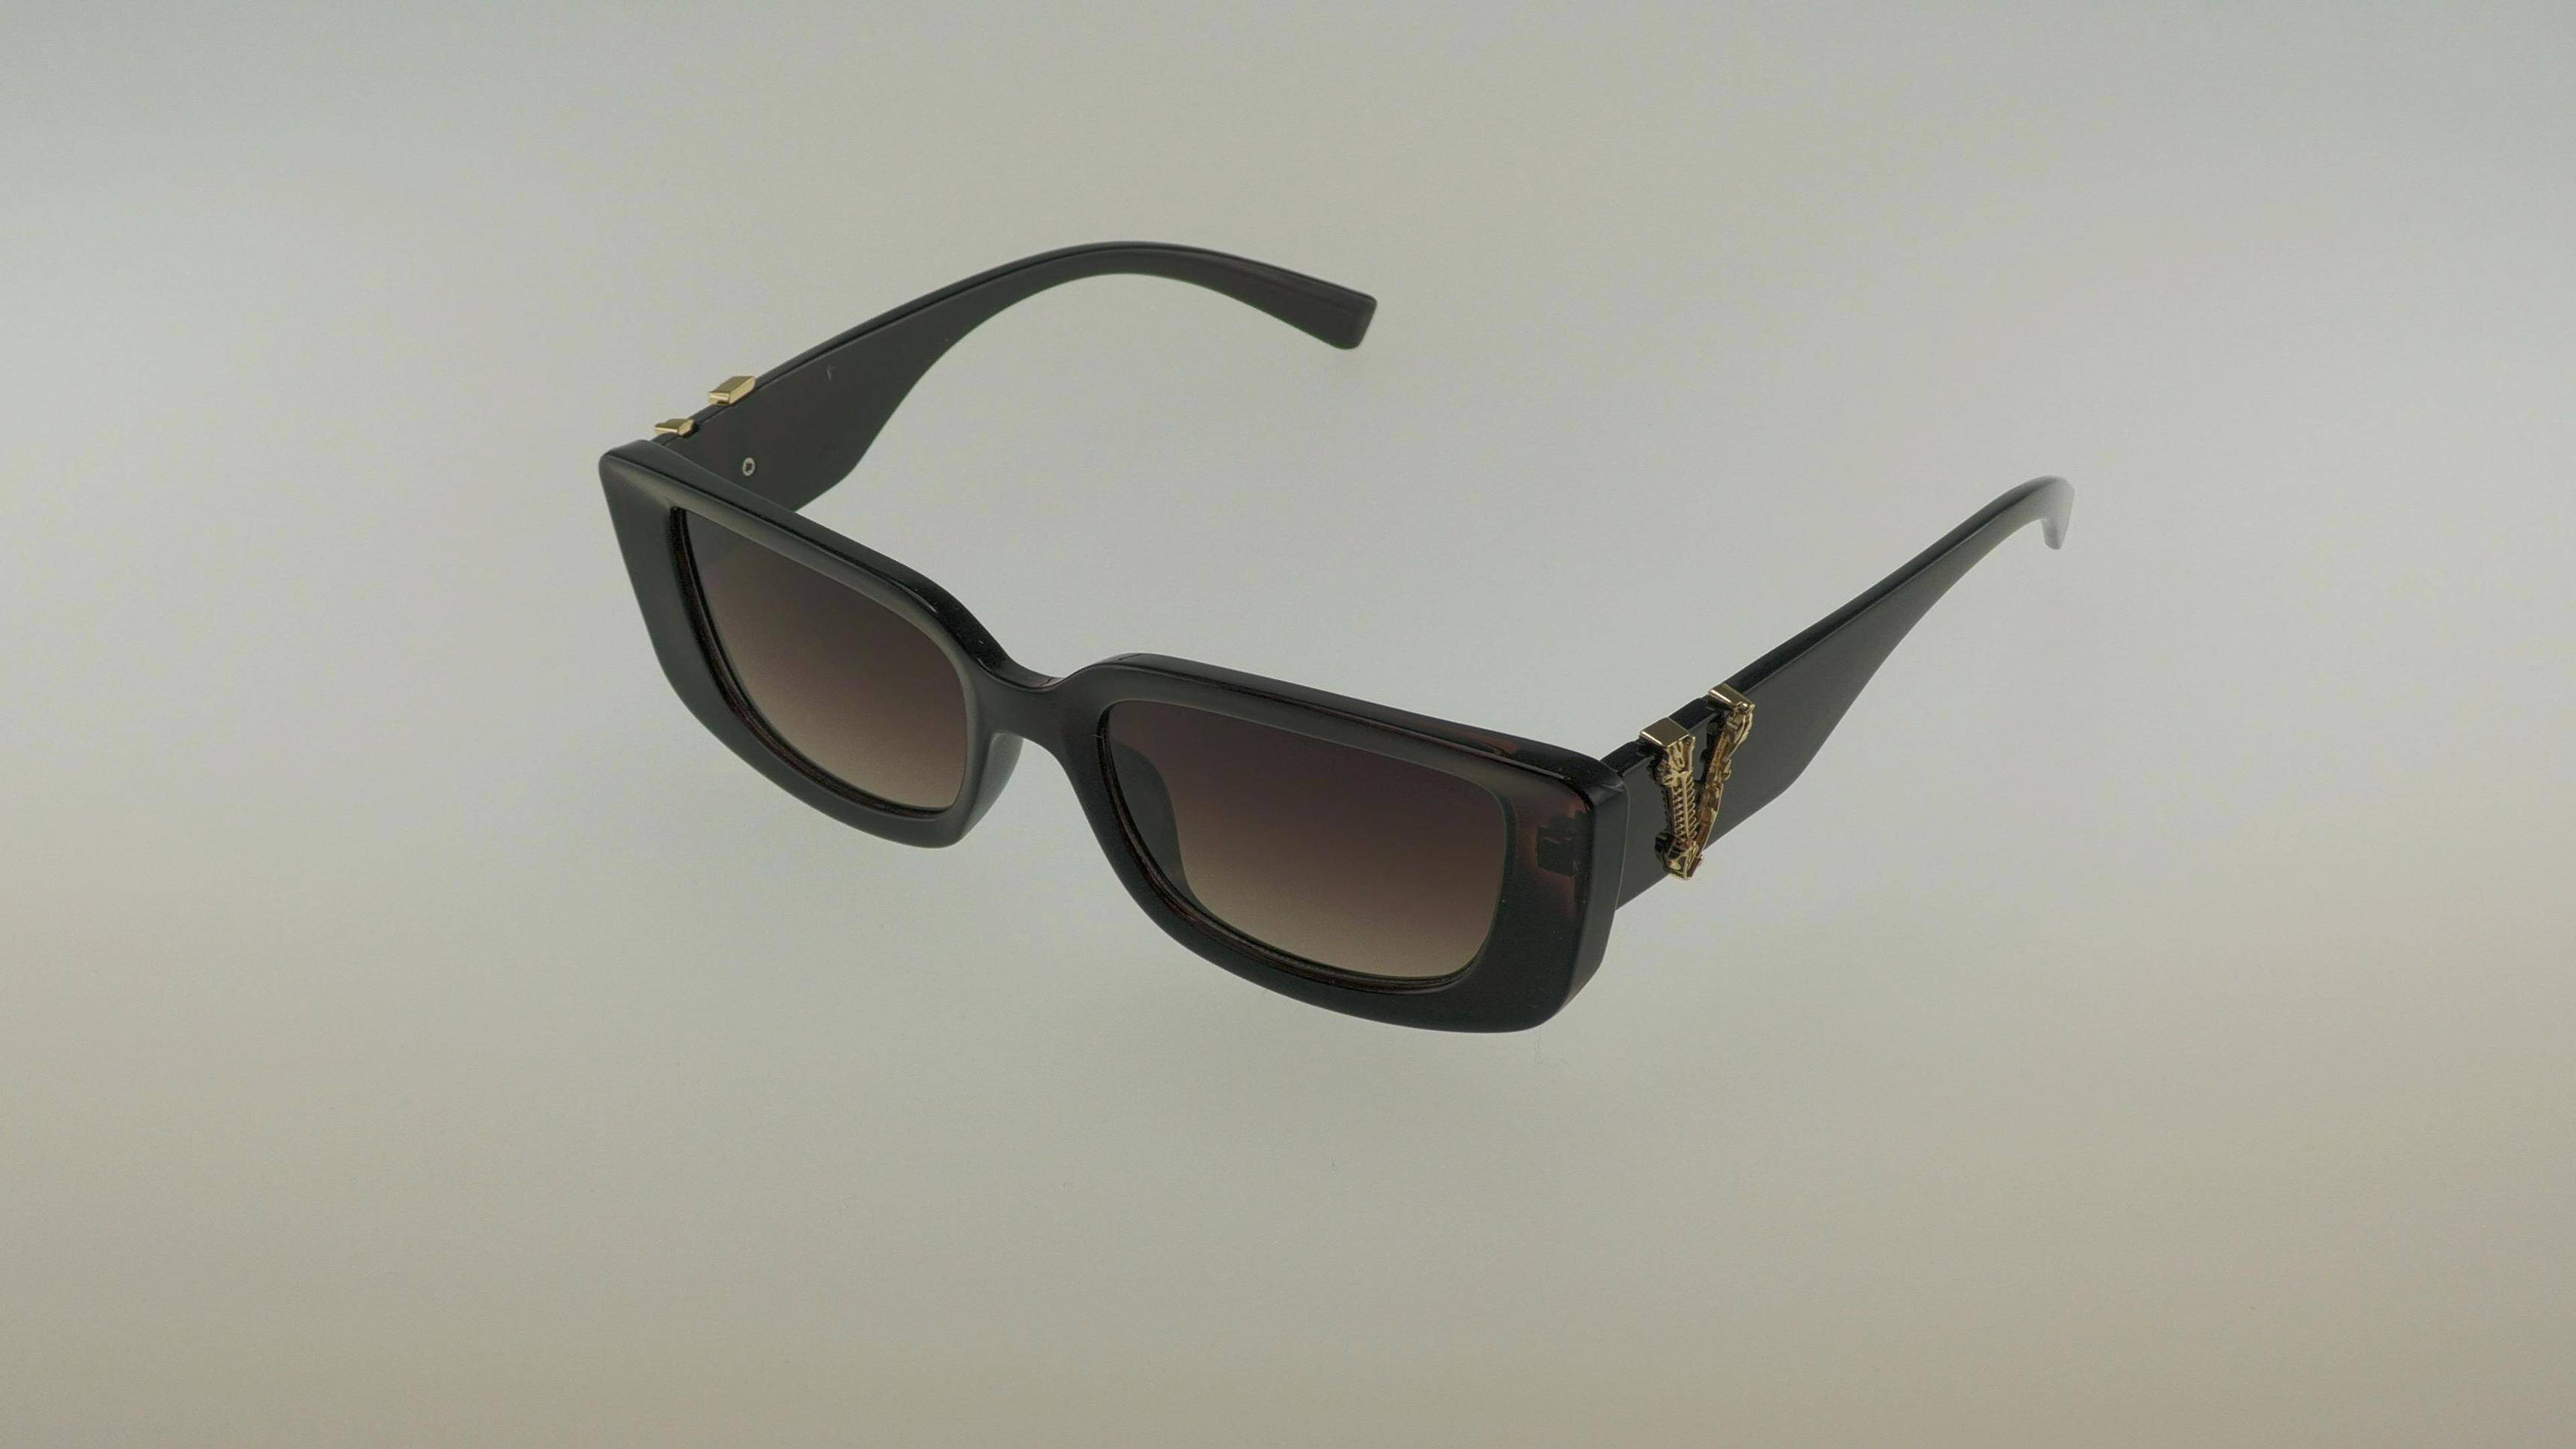 Okulary przeciwsłoneczne 283135  brown (Zdjęcie 1)